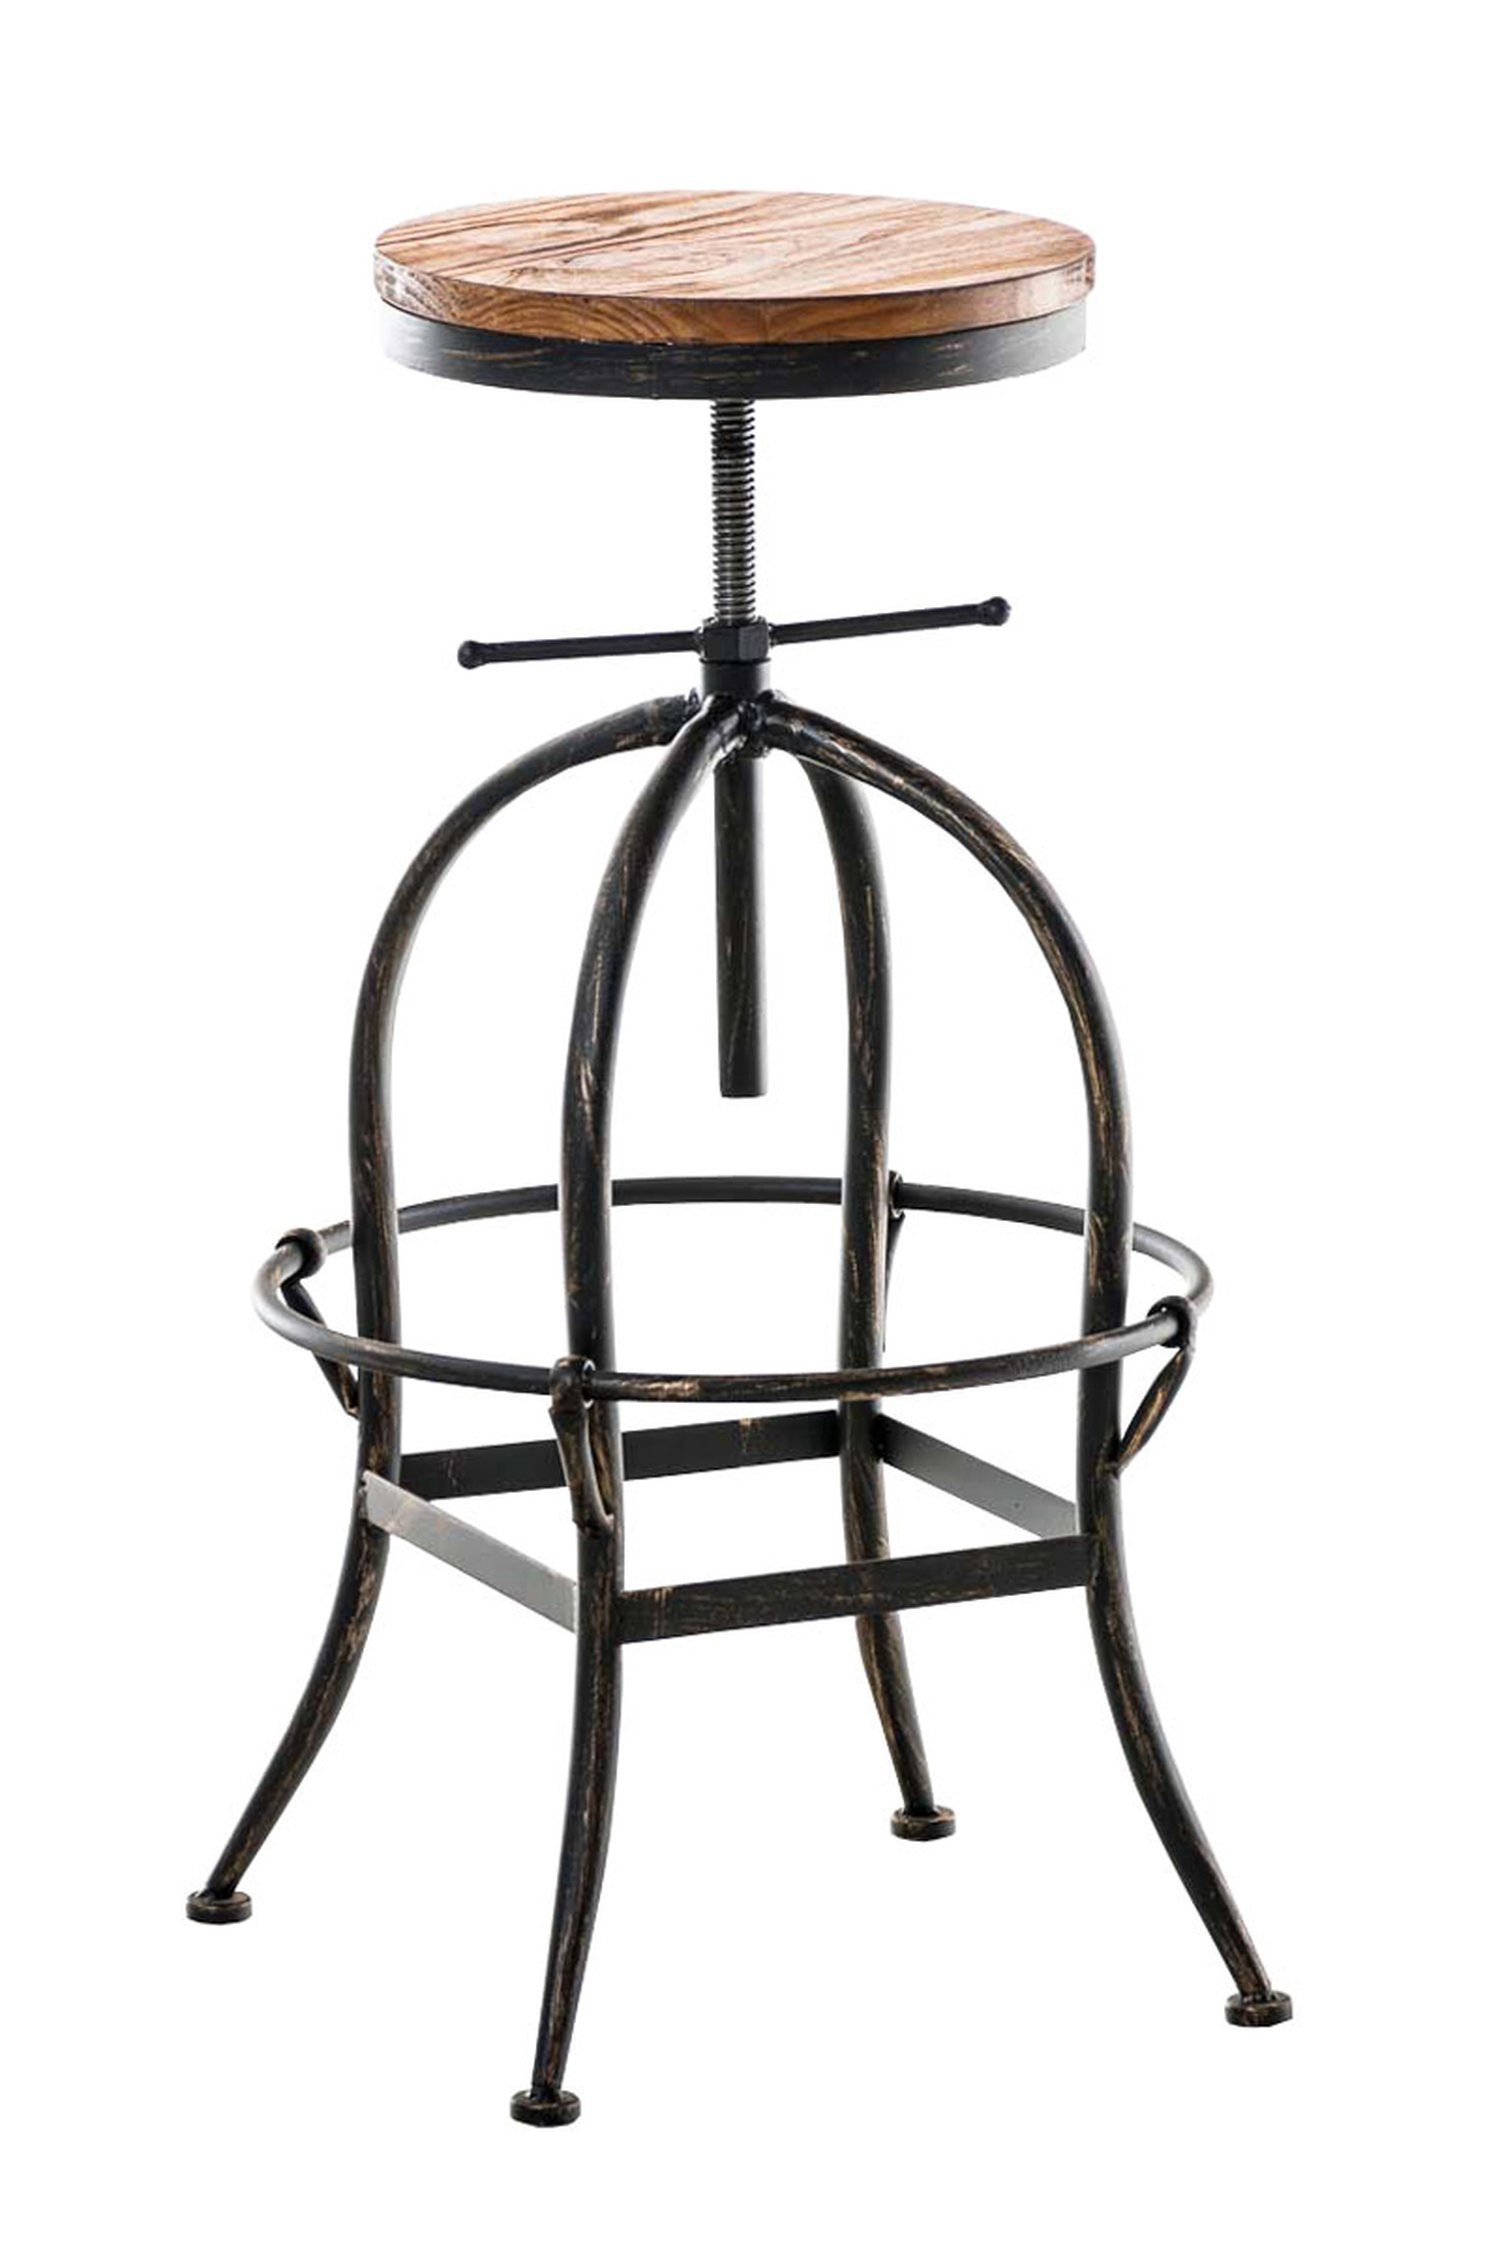 TPFLiving Barhocker Strong (mit angenehmer Fußstütze - Hocker für Theke & Küche), Tresenhocker mit 4-Fuß Gestell Metall bronze - Sitzfläche: Holz